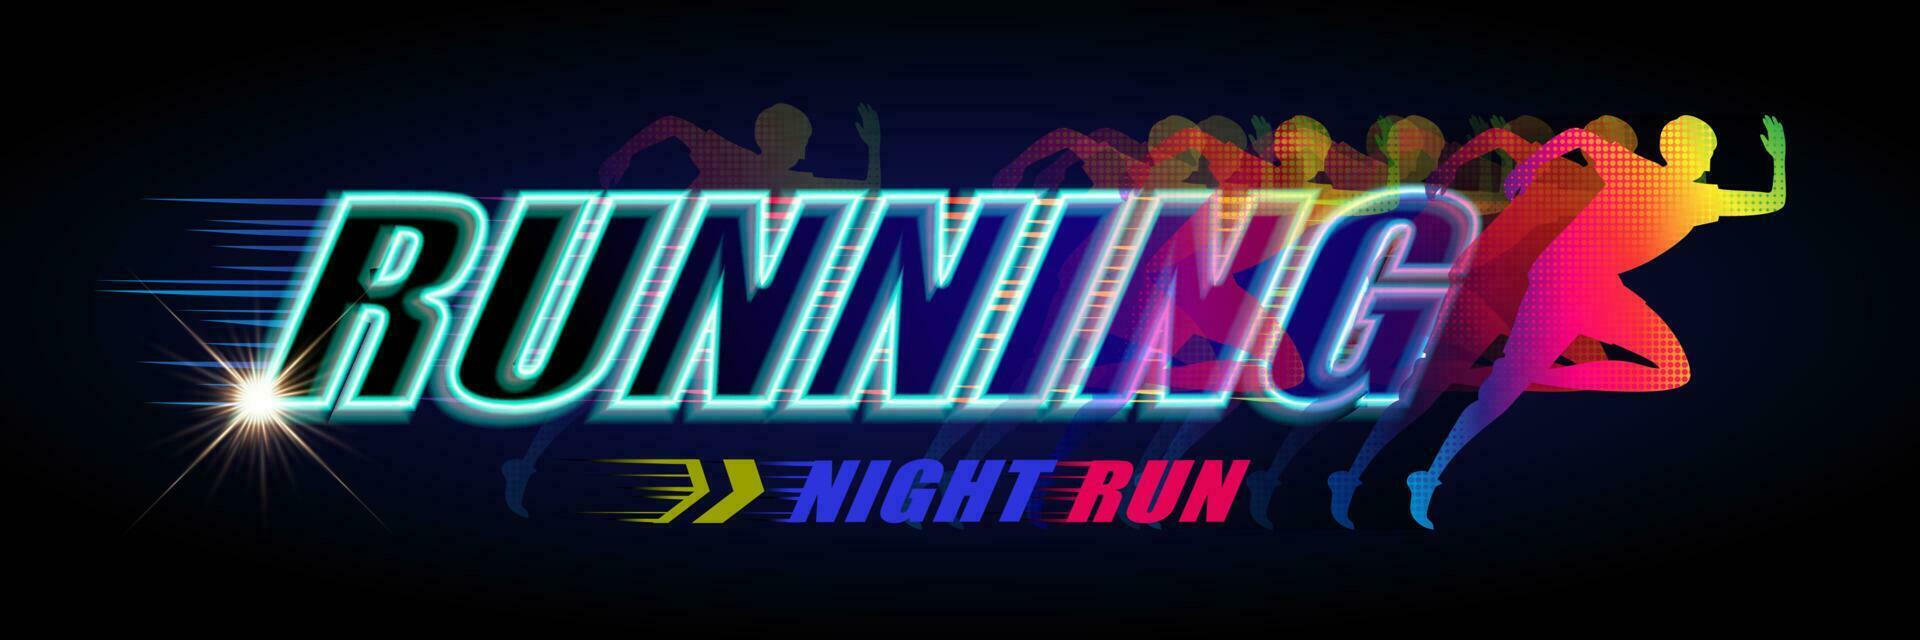 Neon- Licht Stil Nacht Lauf Veranstaltung Banner mit bunt Halbton Läufer auf schwarz Hintergrund vektor